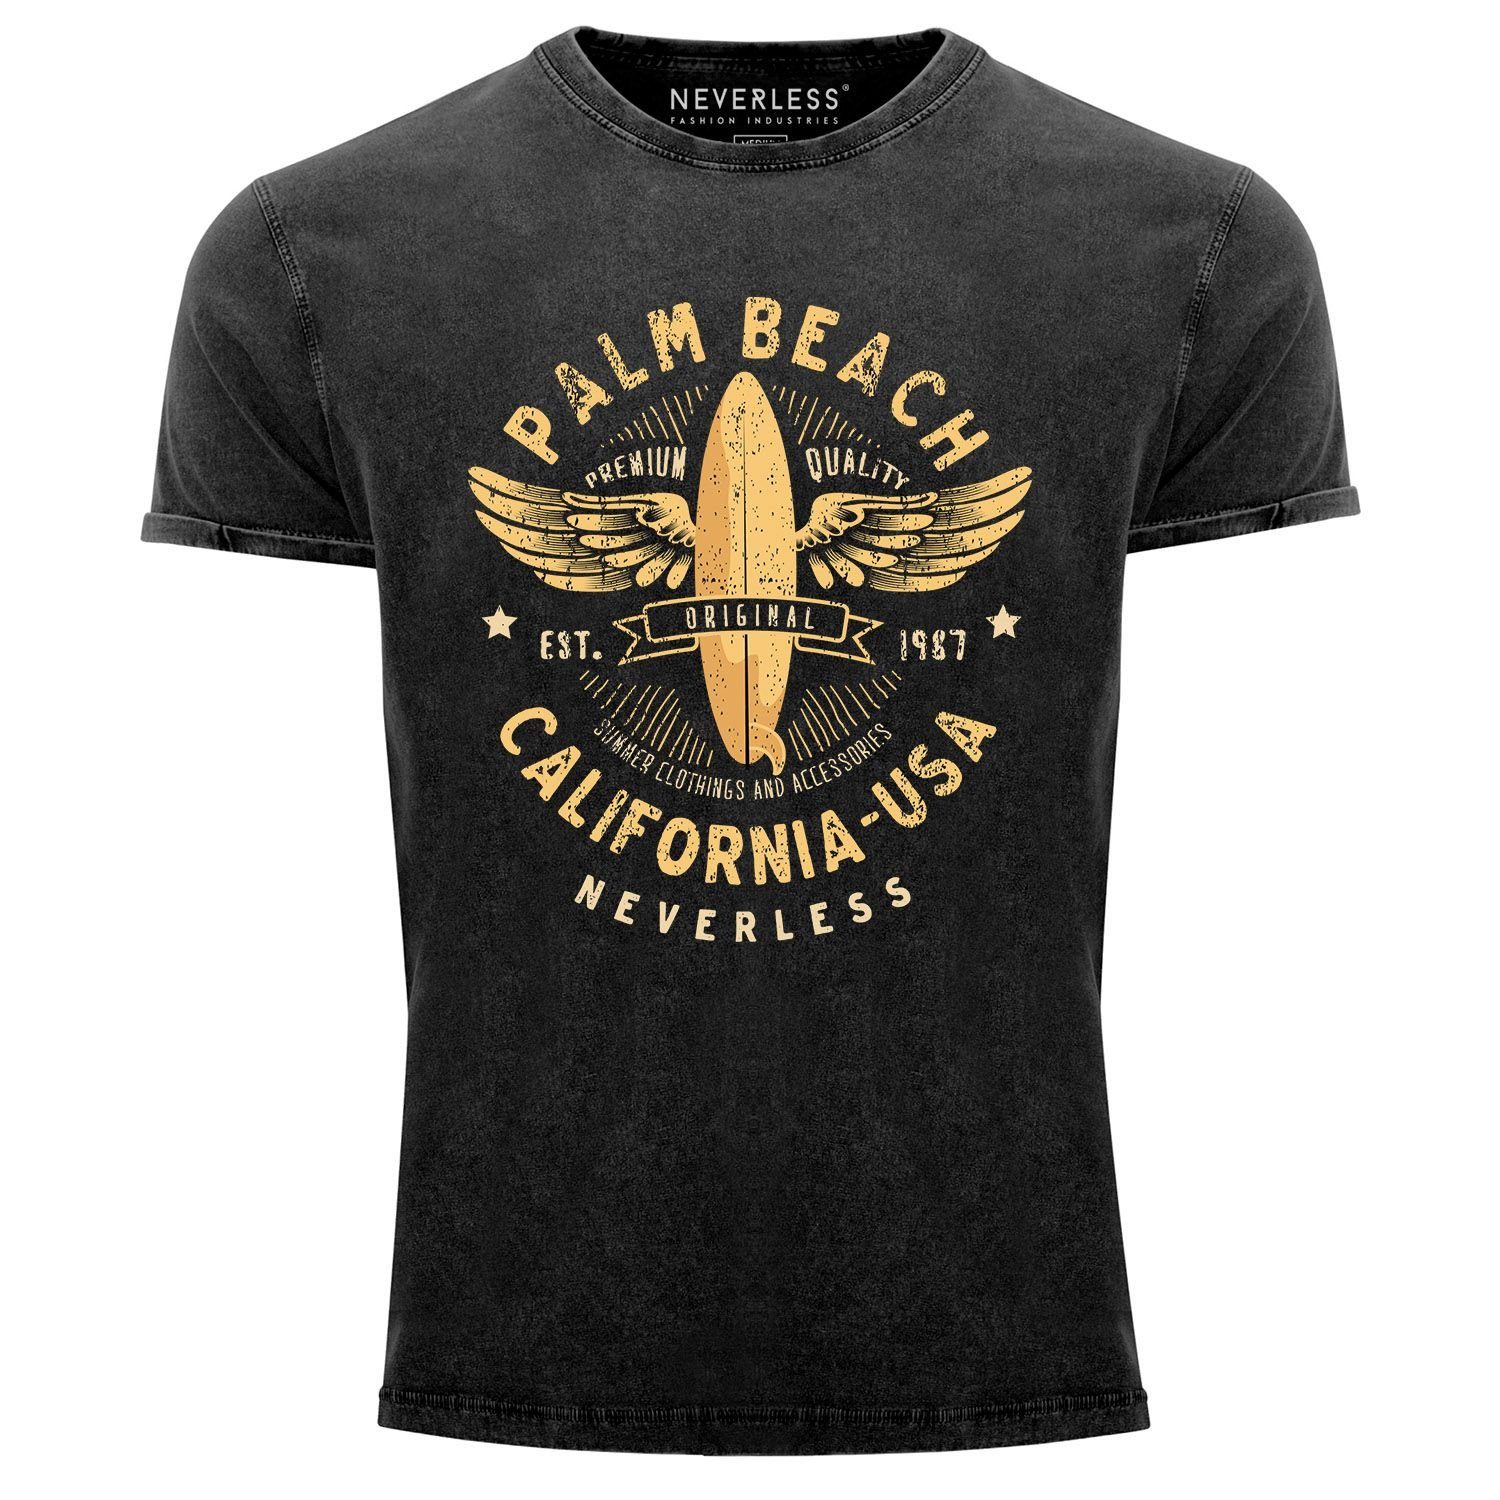 Neverless Print-Shirt Neverless® Herren T-Shirt Vintage Shirt Printshirt Surfing Motiv Vintage Effekt Palm Beach California USA Schriftzug Aufdruck Used Look Slim Fit mit Print